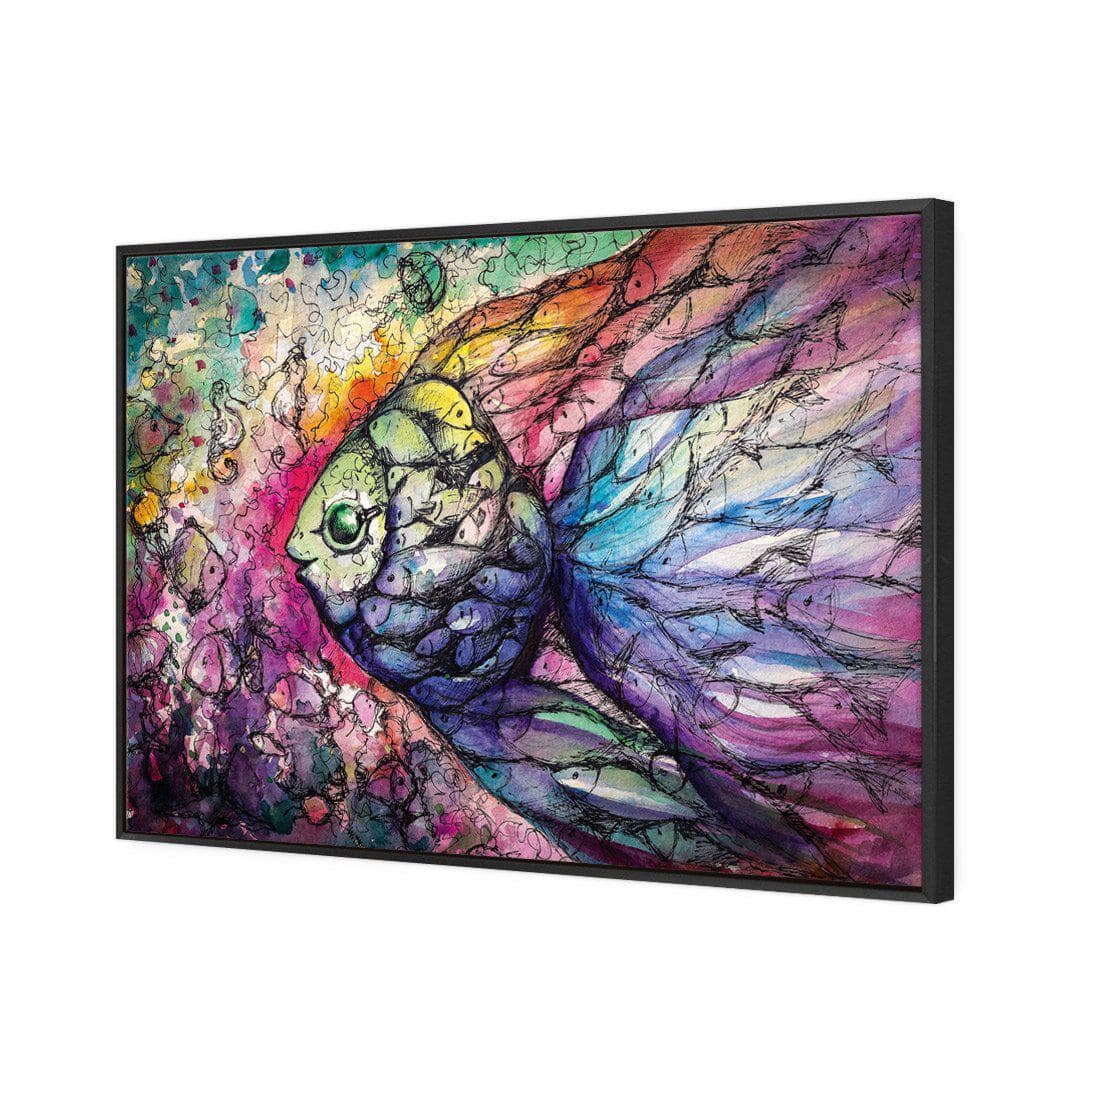 Scribblefish Canvas Art-Canvas-Wall Art Designs-45x30cm-Canvas - Black Frame-Wall Art Designs